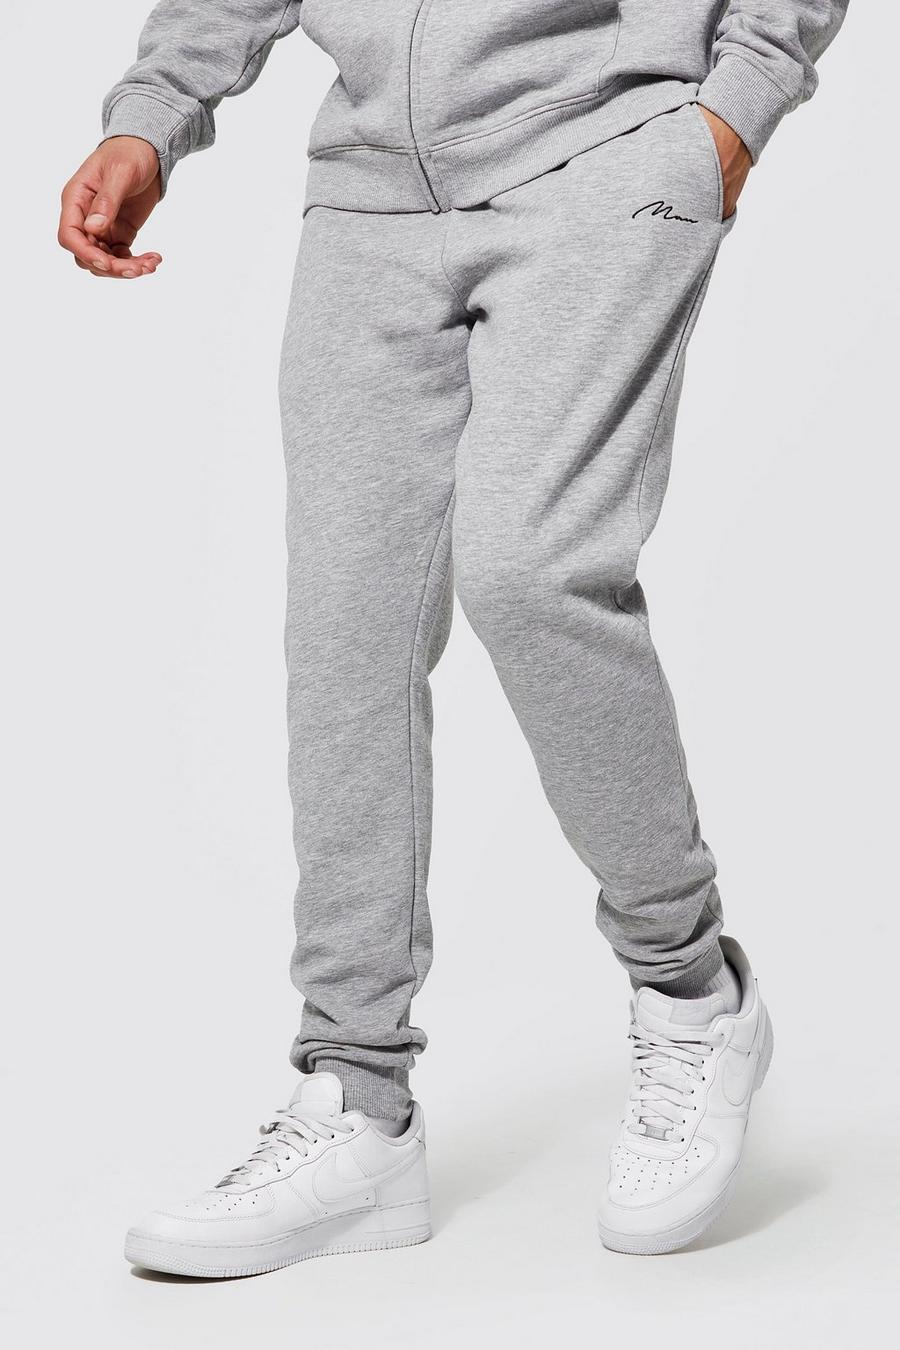 xpaccessories Mens Plain Casual Fleece Jogging Bottoms Zip Pockets Open Hem Gym Joggers Trousers Sweat Pants UK Size S-6XL 